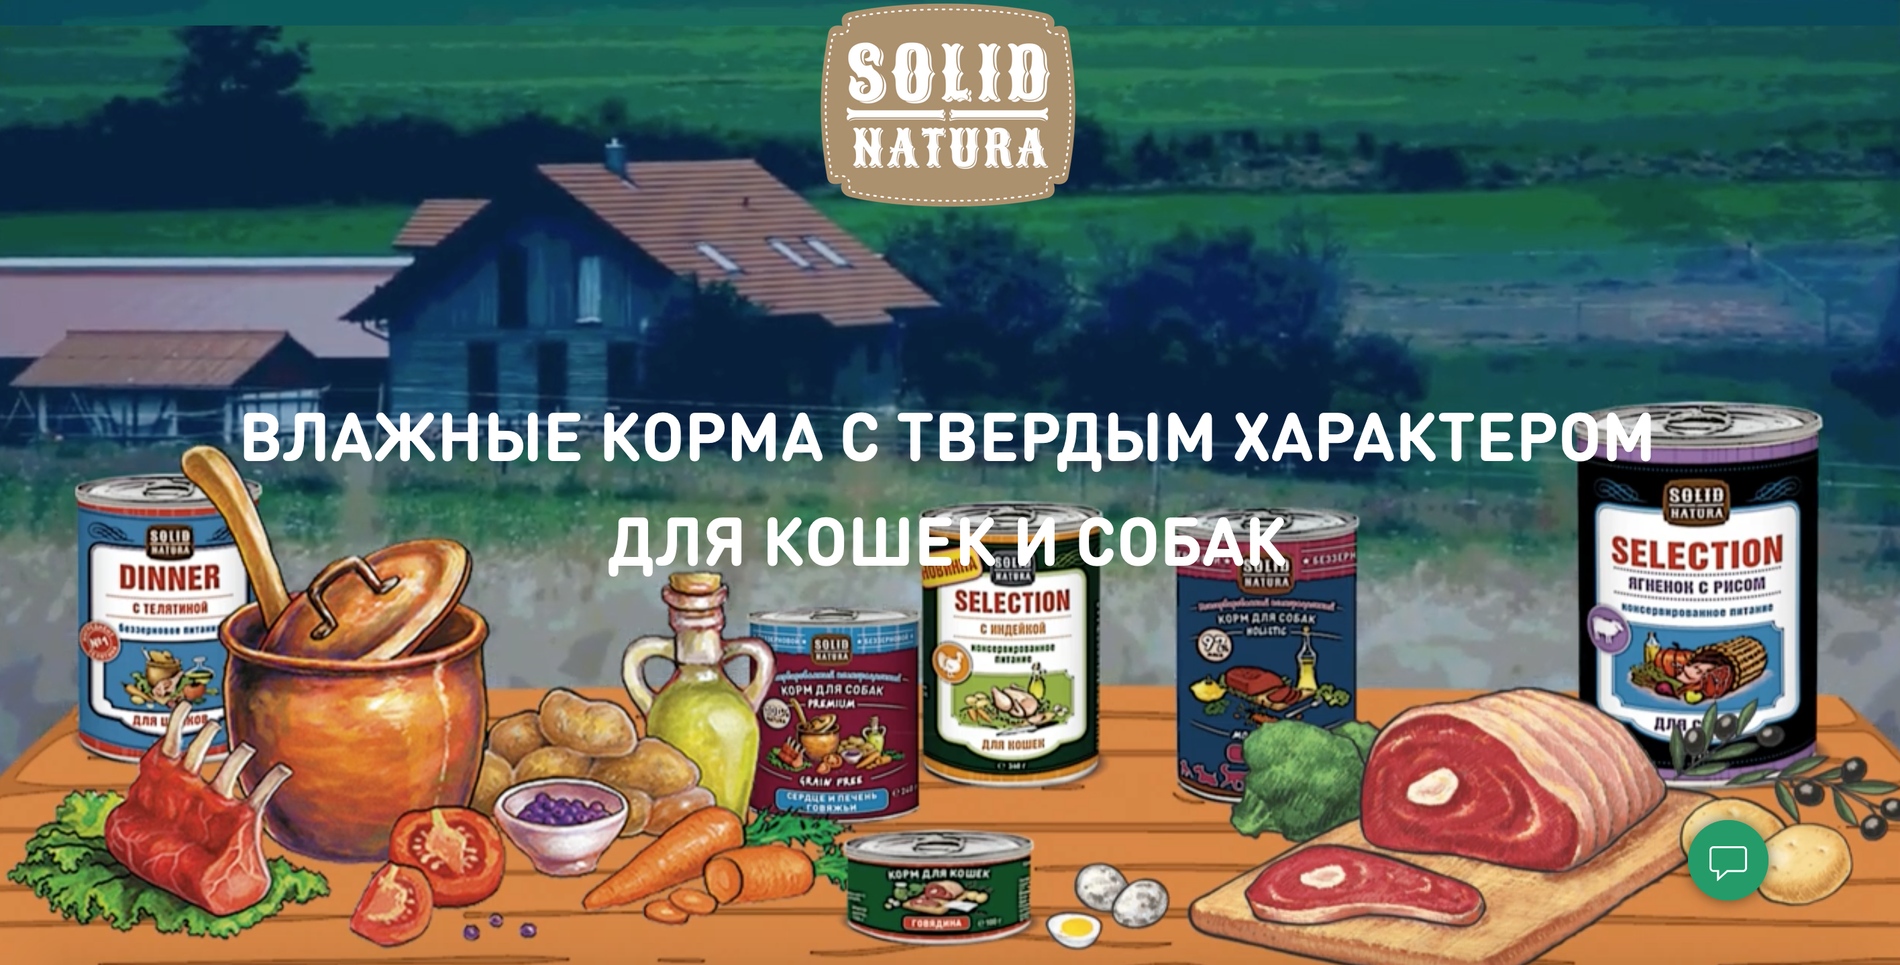 купить консервы и лакомства Solid Natura для собак и котов с бесплатной доставкой в Калининграде